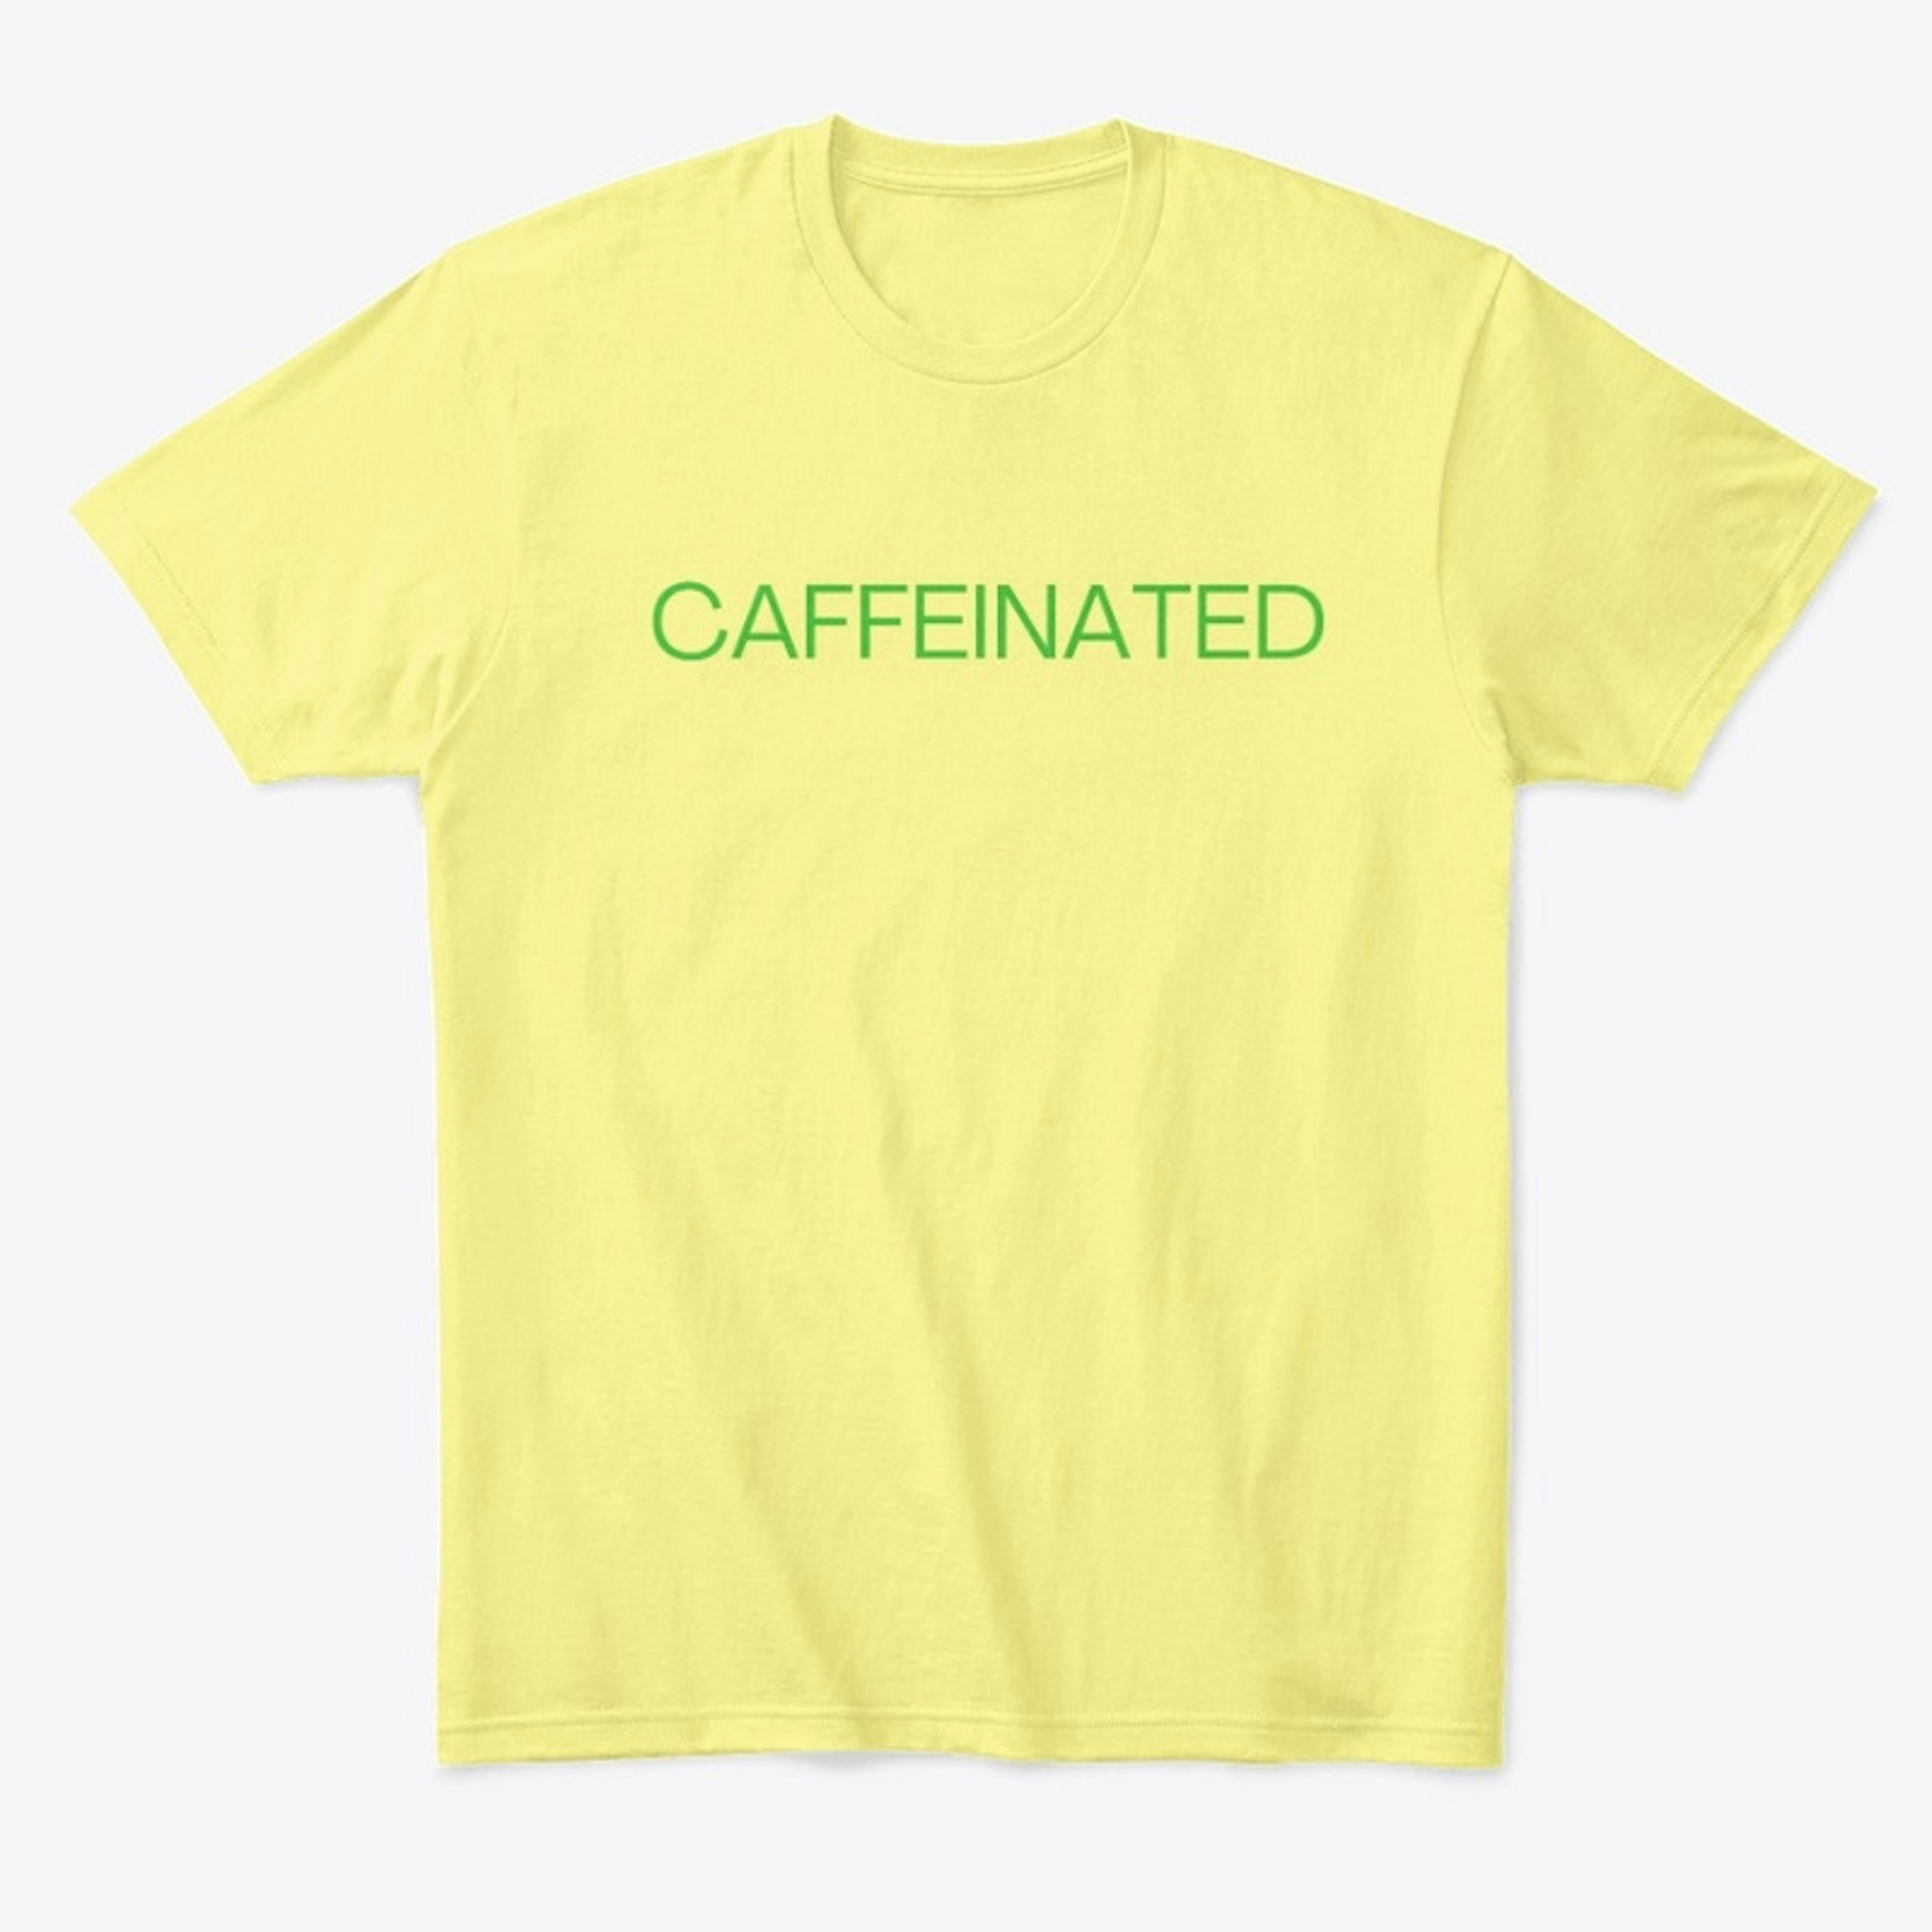 CAFFEINATED